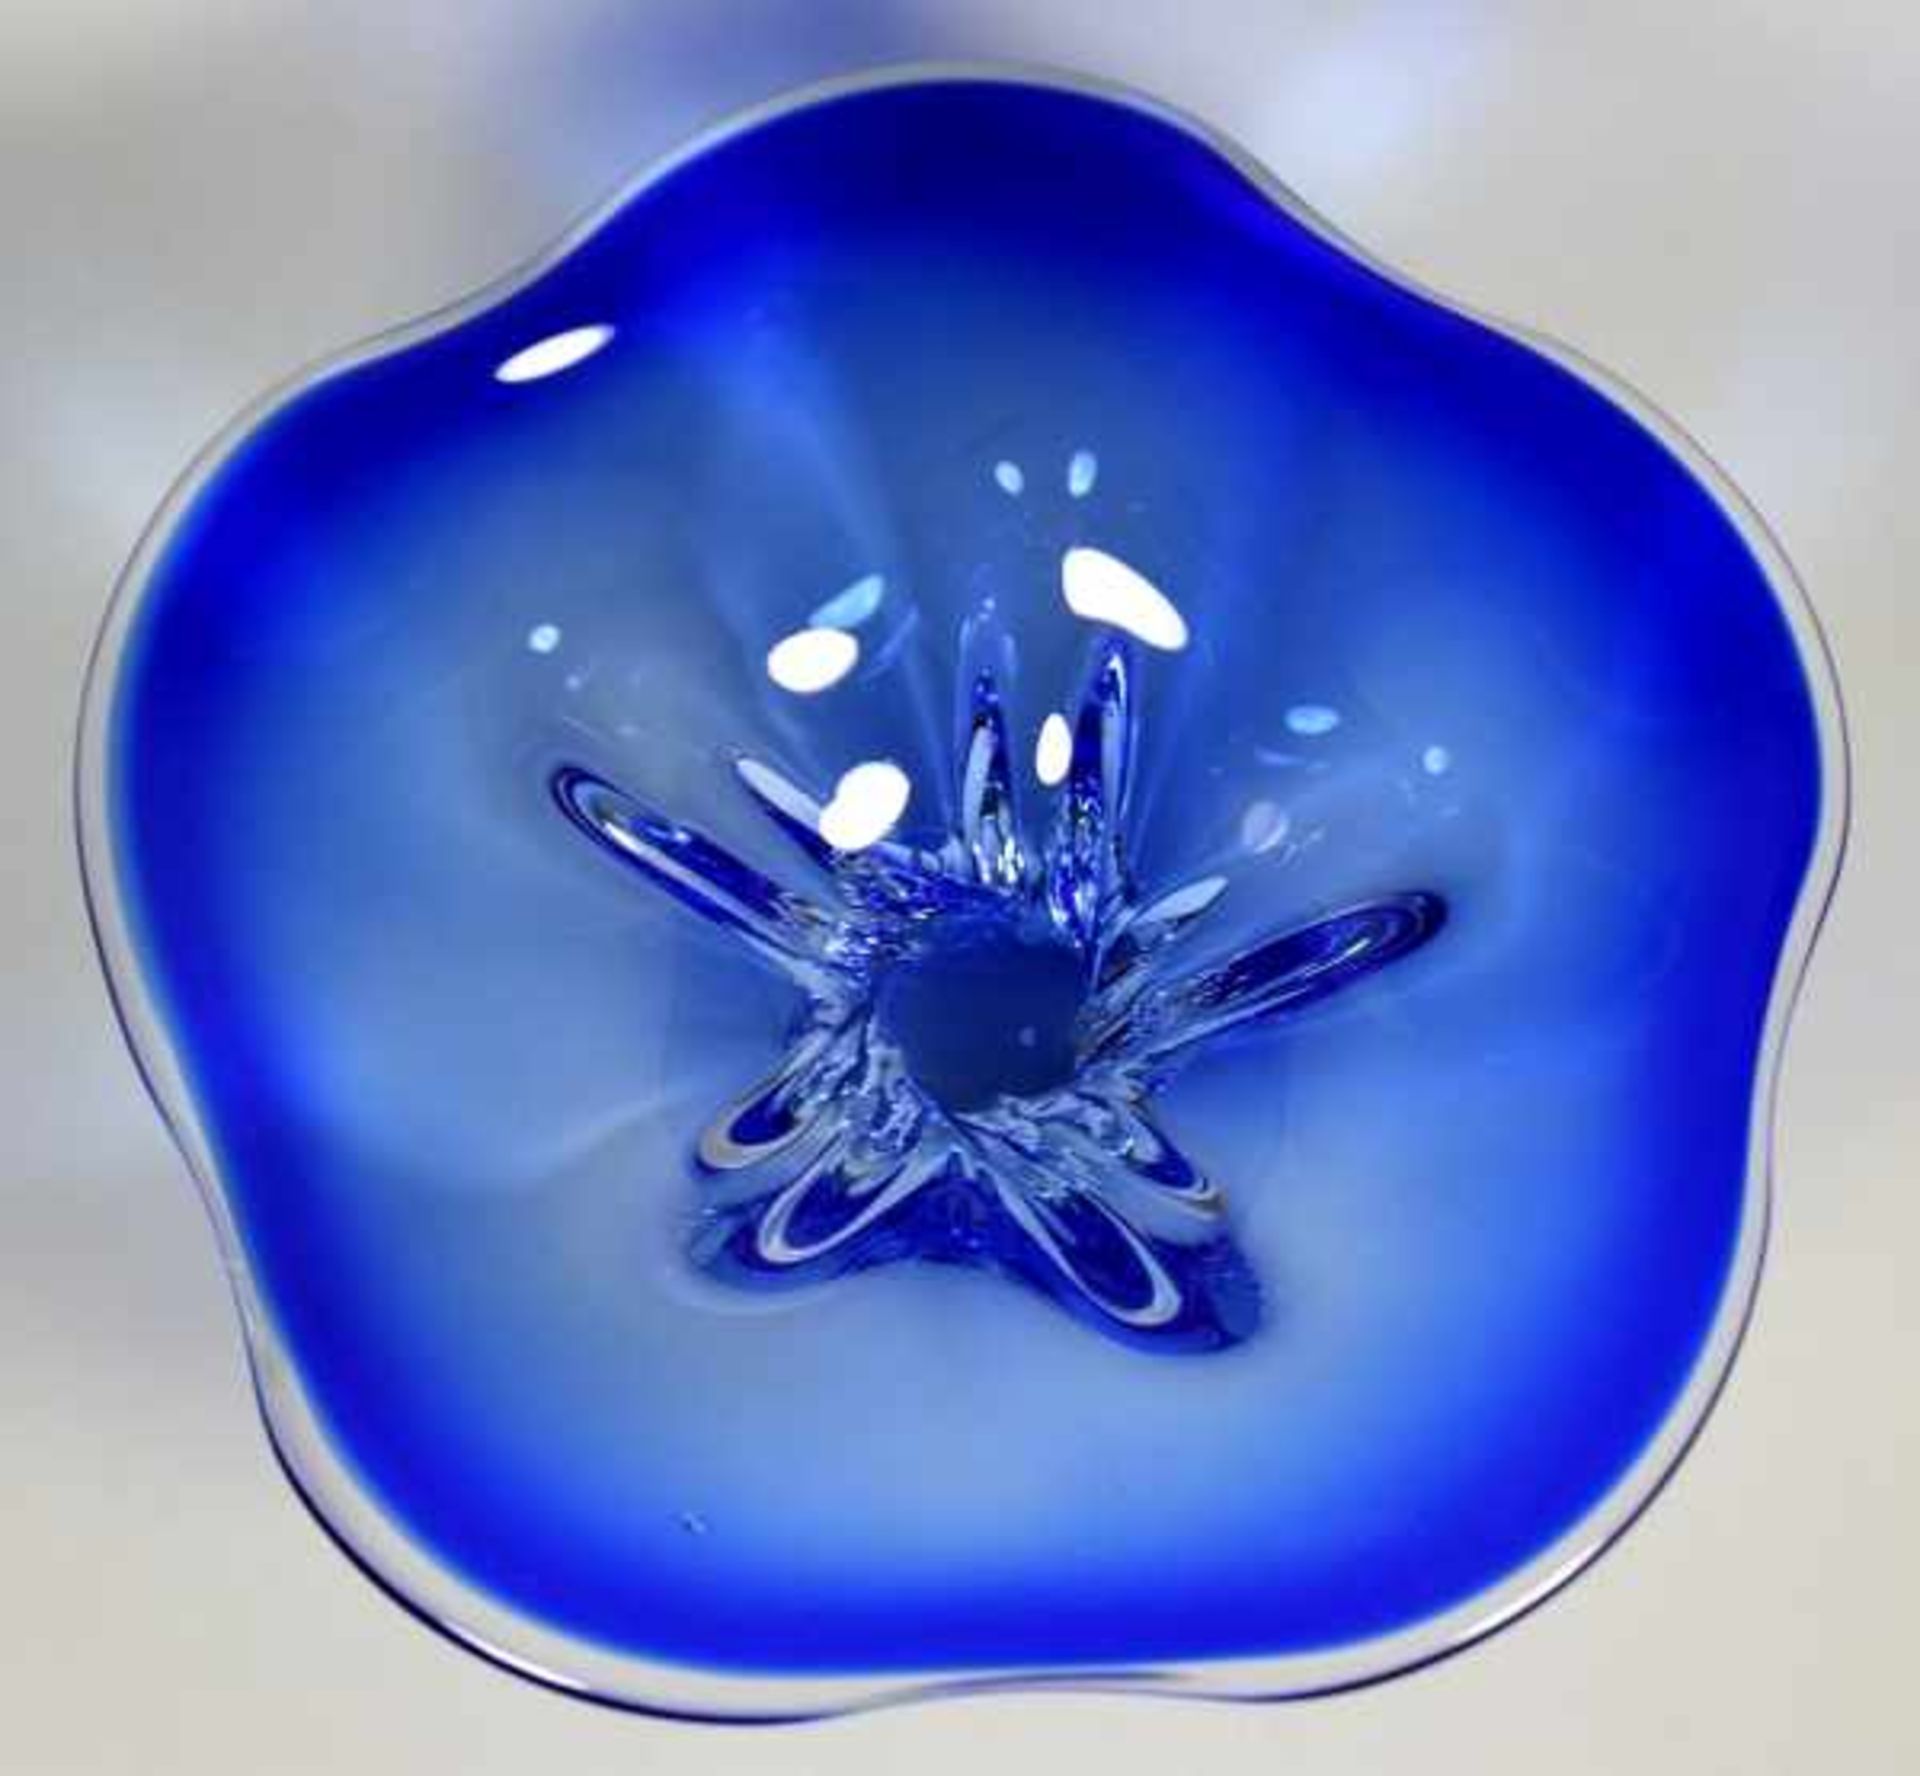 GROSSE SCHALE mit geschwungenen Rändern, auf kleiner runder Basis, durchsichtiges Glas, dunkelblau - Bild 3 aus 3